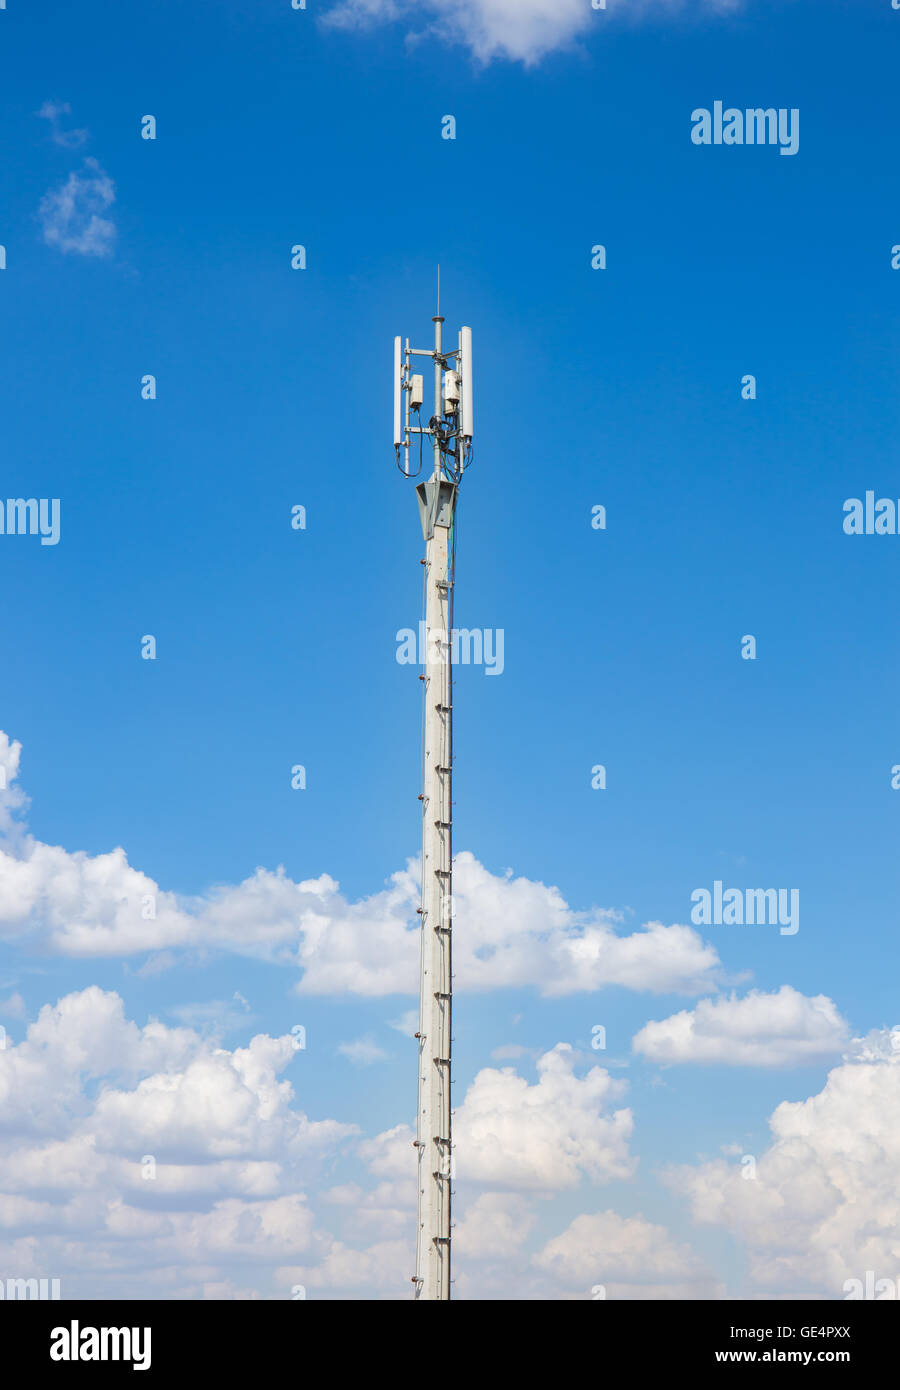 Sendeturm Antenne Repeater auf blauen Himmelshintergrund Stockfoto